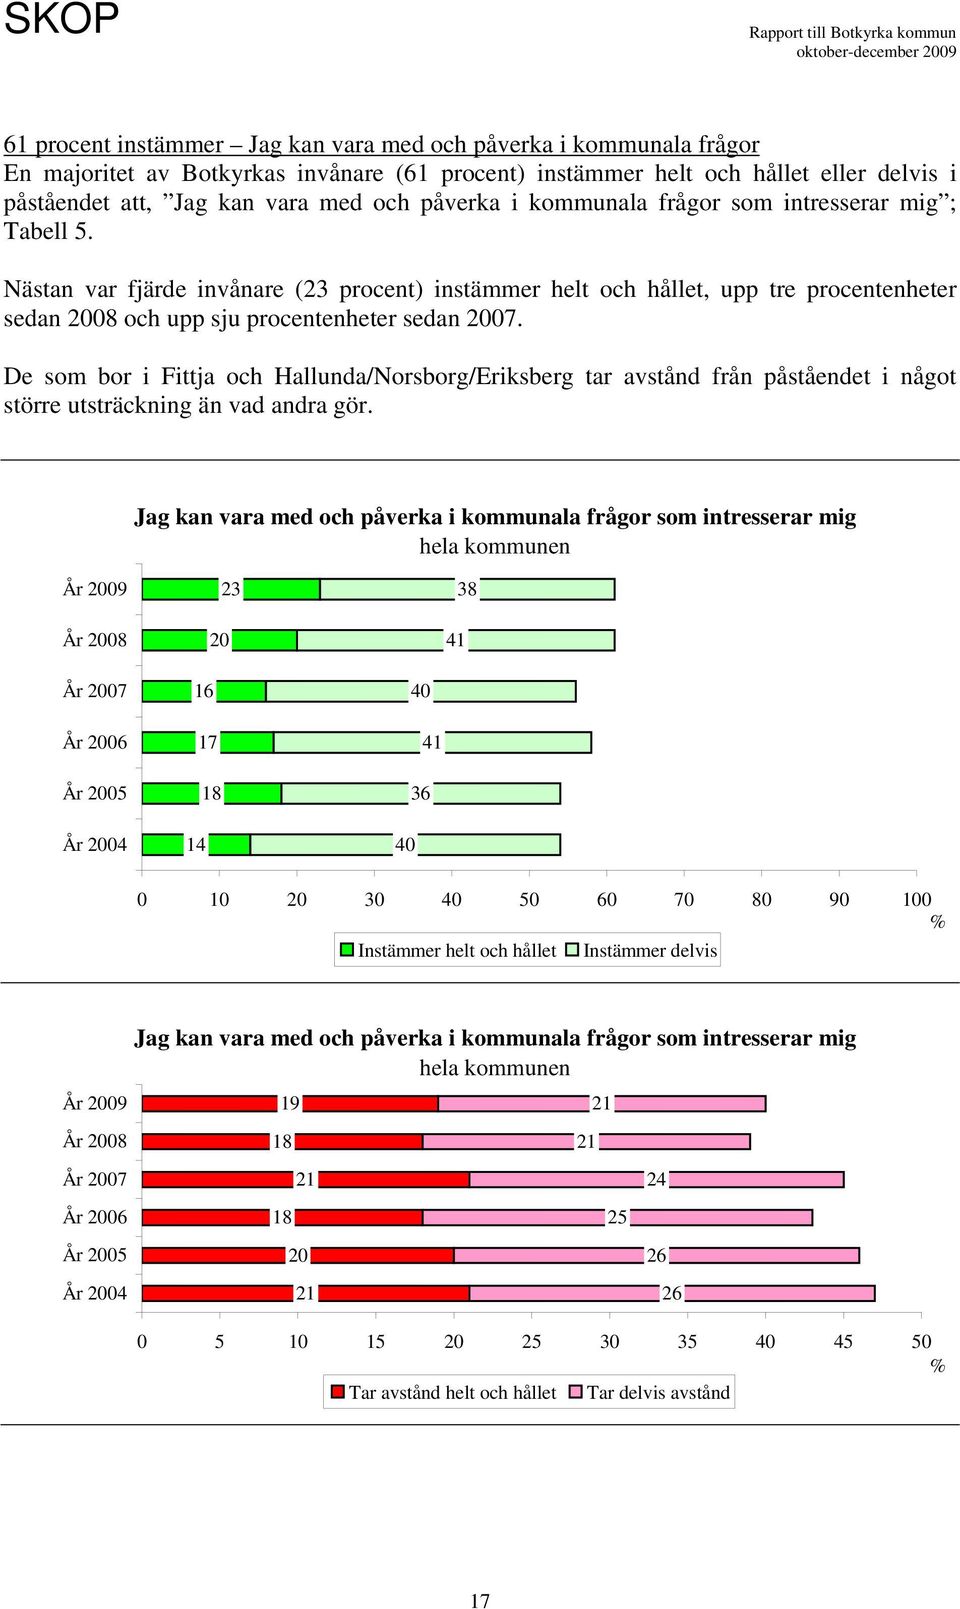 De som bor i Fittja och Hallunda/Norsborg/Eriksberg tar avstånd från påståendet i något större utsträckning än vad andra gör.